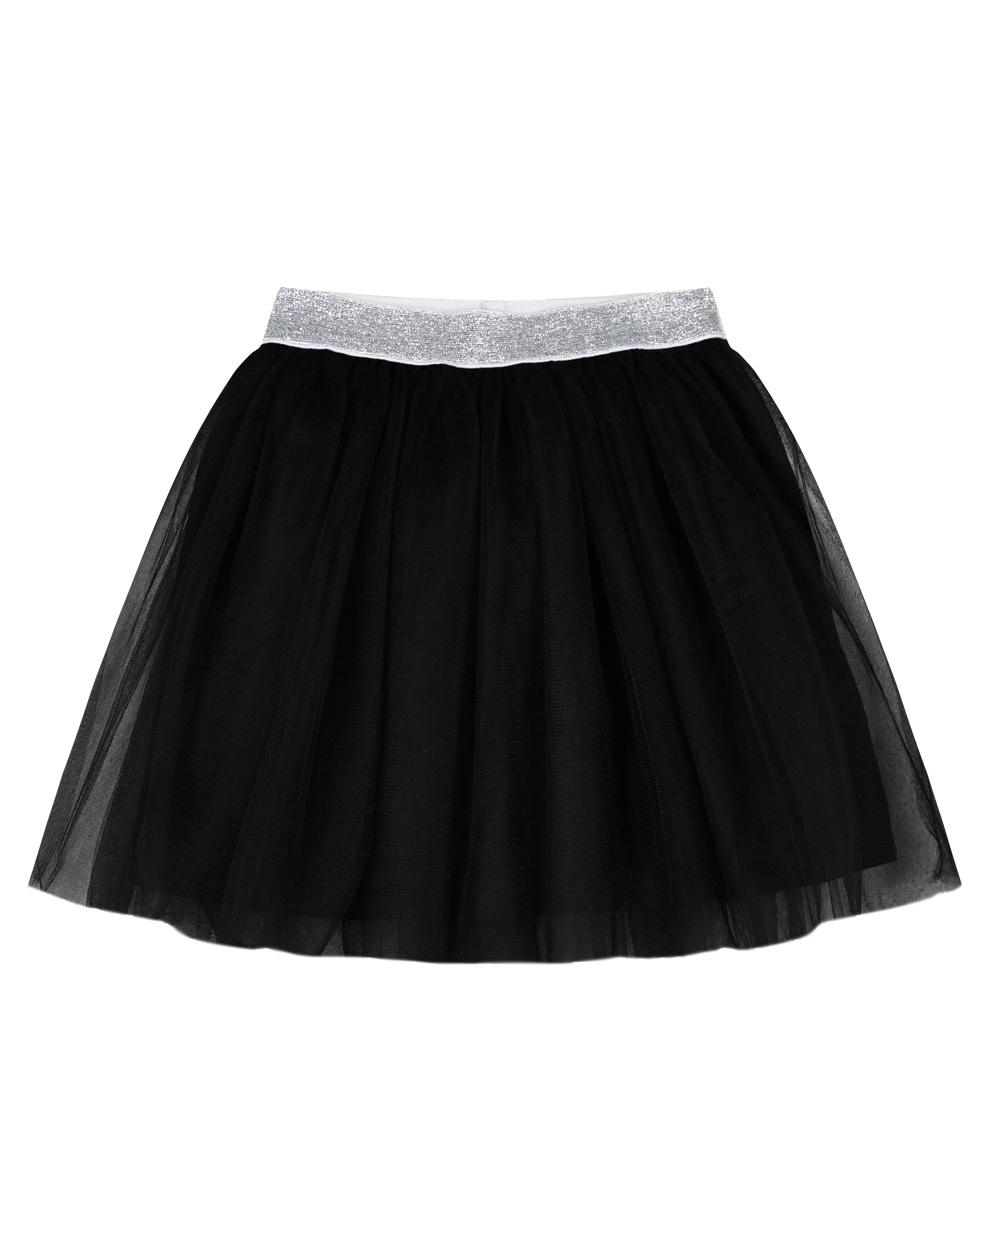 Μονόχρωμη φούστα με τούλι και ασημί λάστιχο για κορίτσι | ΜΑΥΡΟ ΚΟΡΙΤΣΙ 6-16>Φούστα